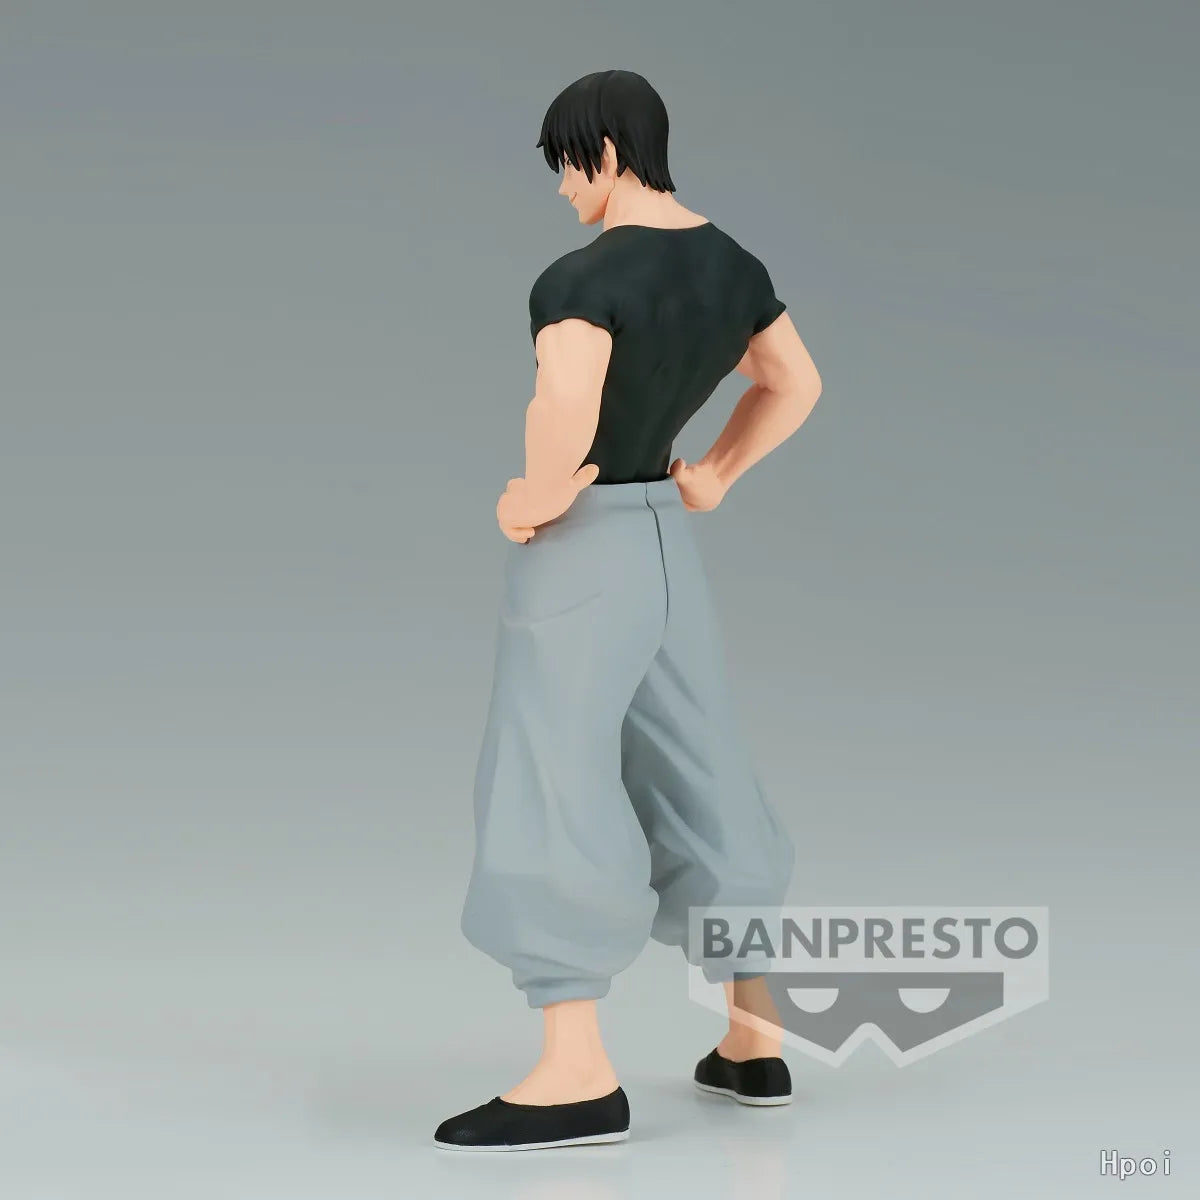 Banpresto – Figurine originale de 17cm, Anime Jujutsu Kaisen Fushiguro Toji, modèle d'action, jouet de Collection, poupée, cadeaux